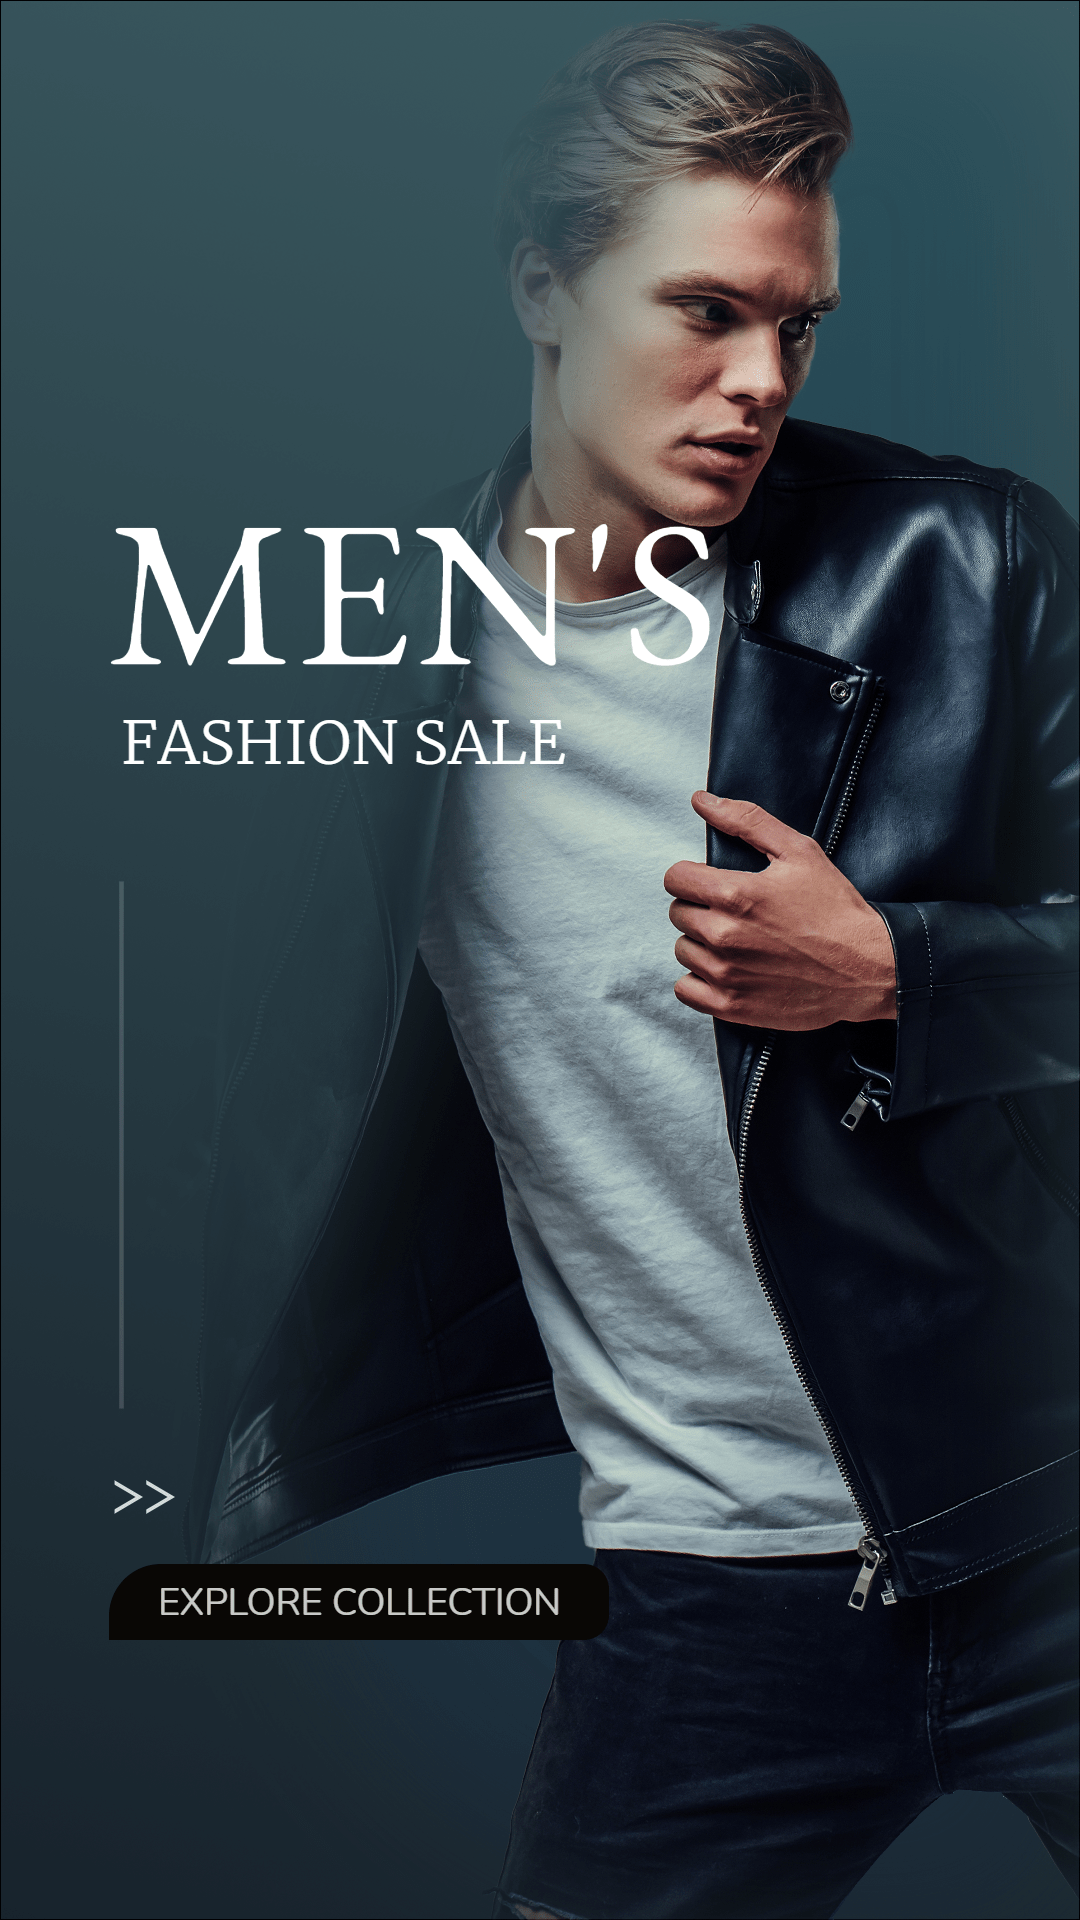 Jacket Coat Men's Fashion Sale Promotion Ecommerce Story